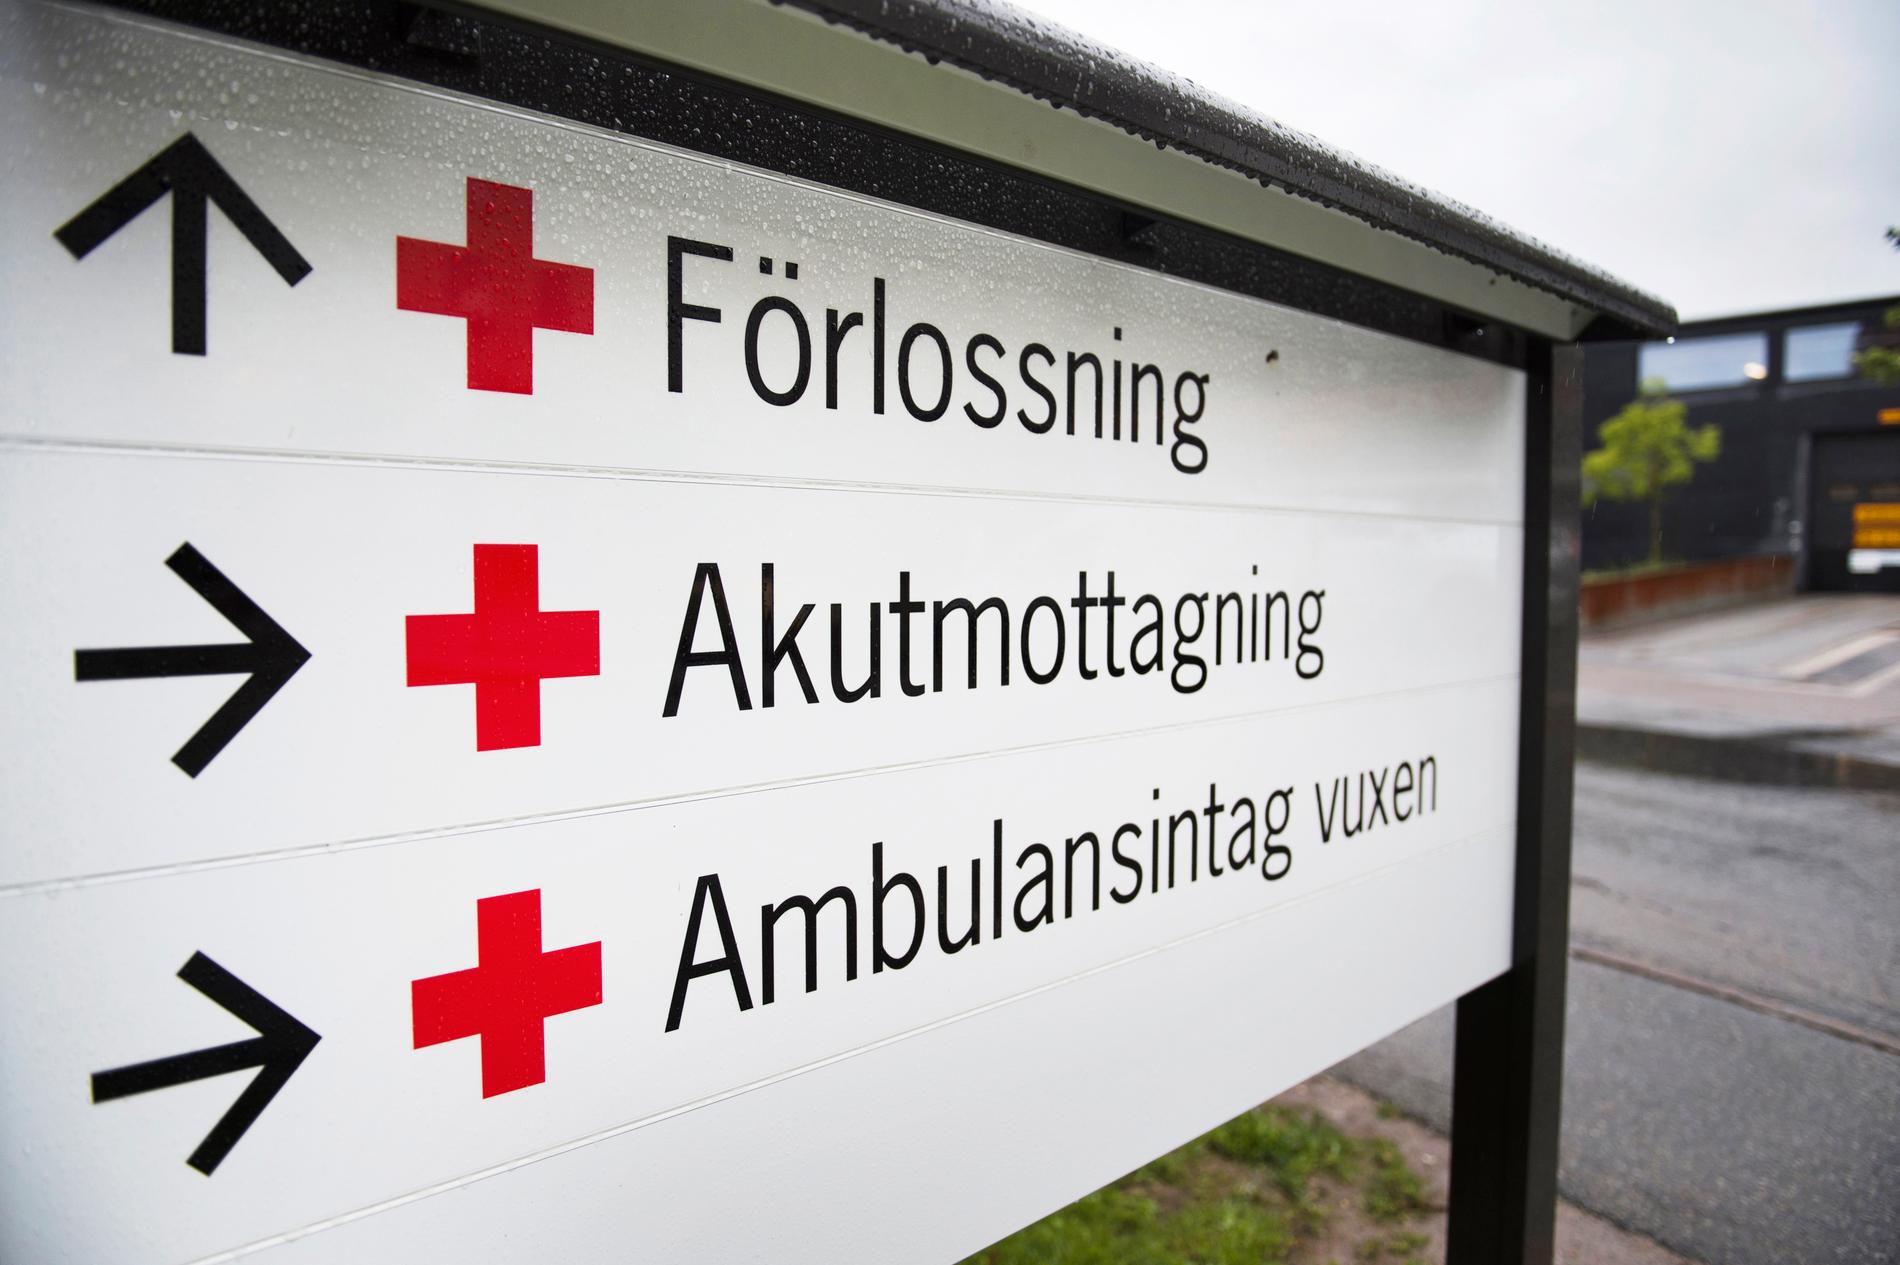 ”Det har hänt något med svensk förlossningsvård”, skriver Malin Wollin.